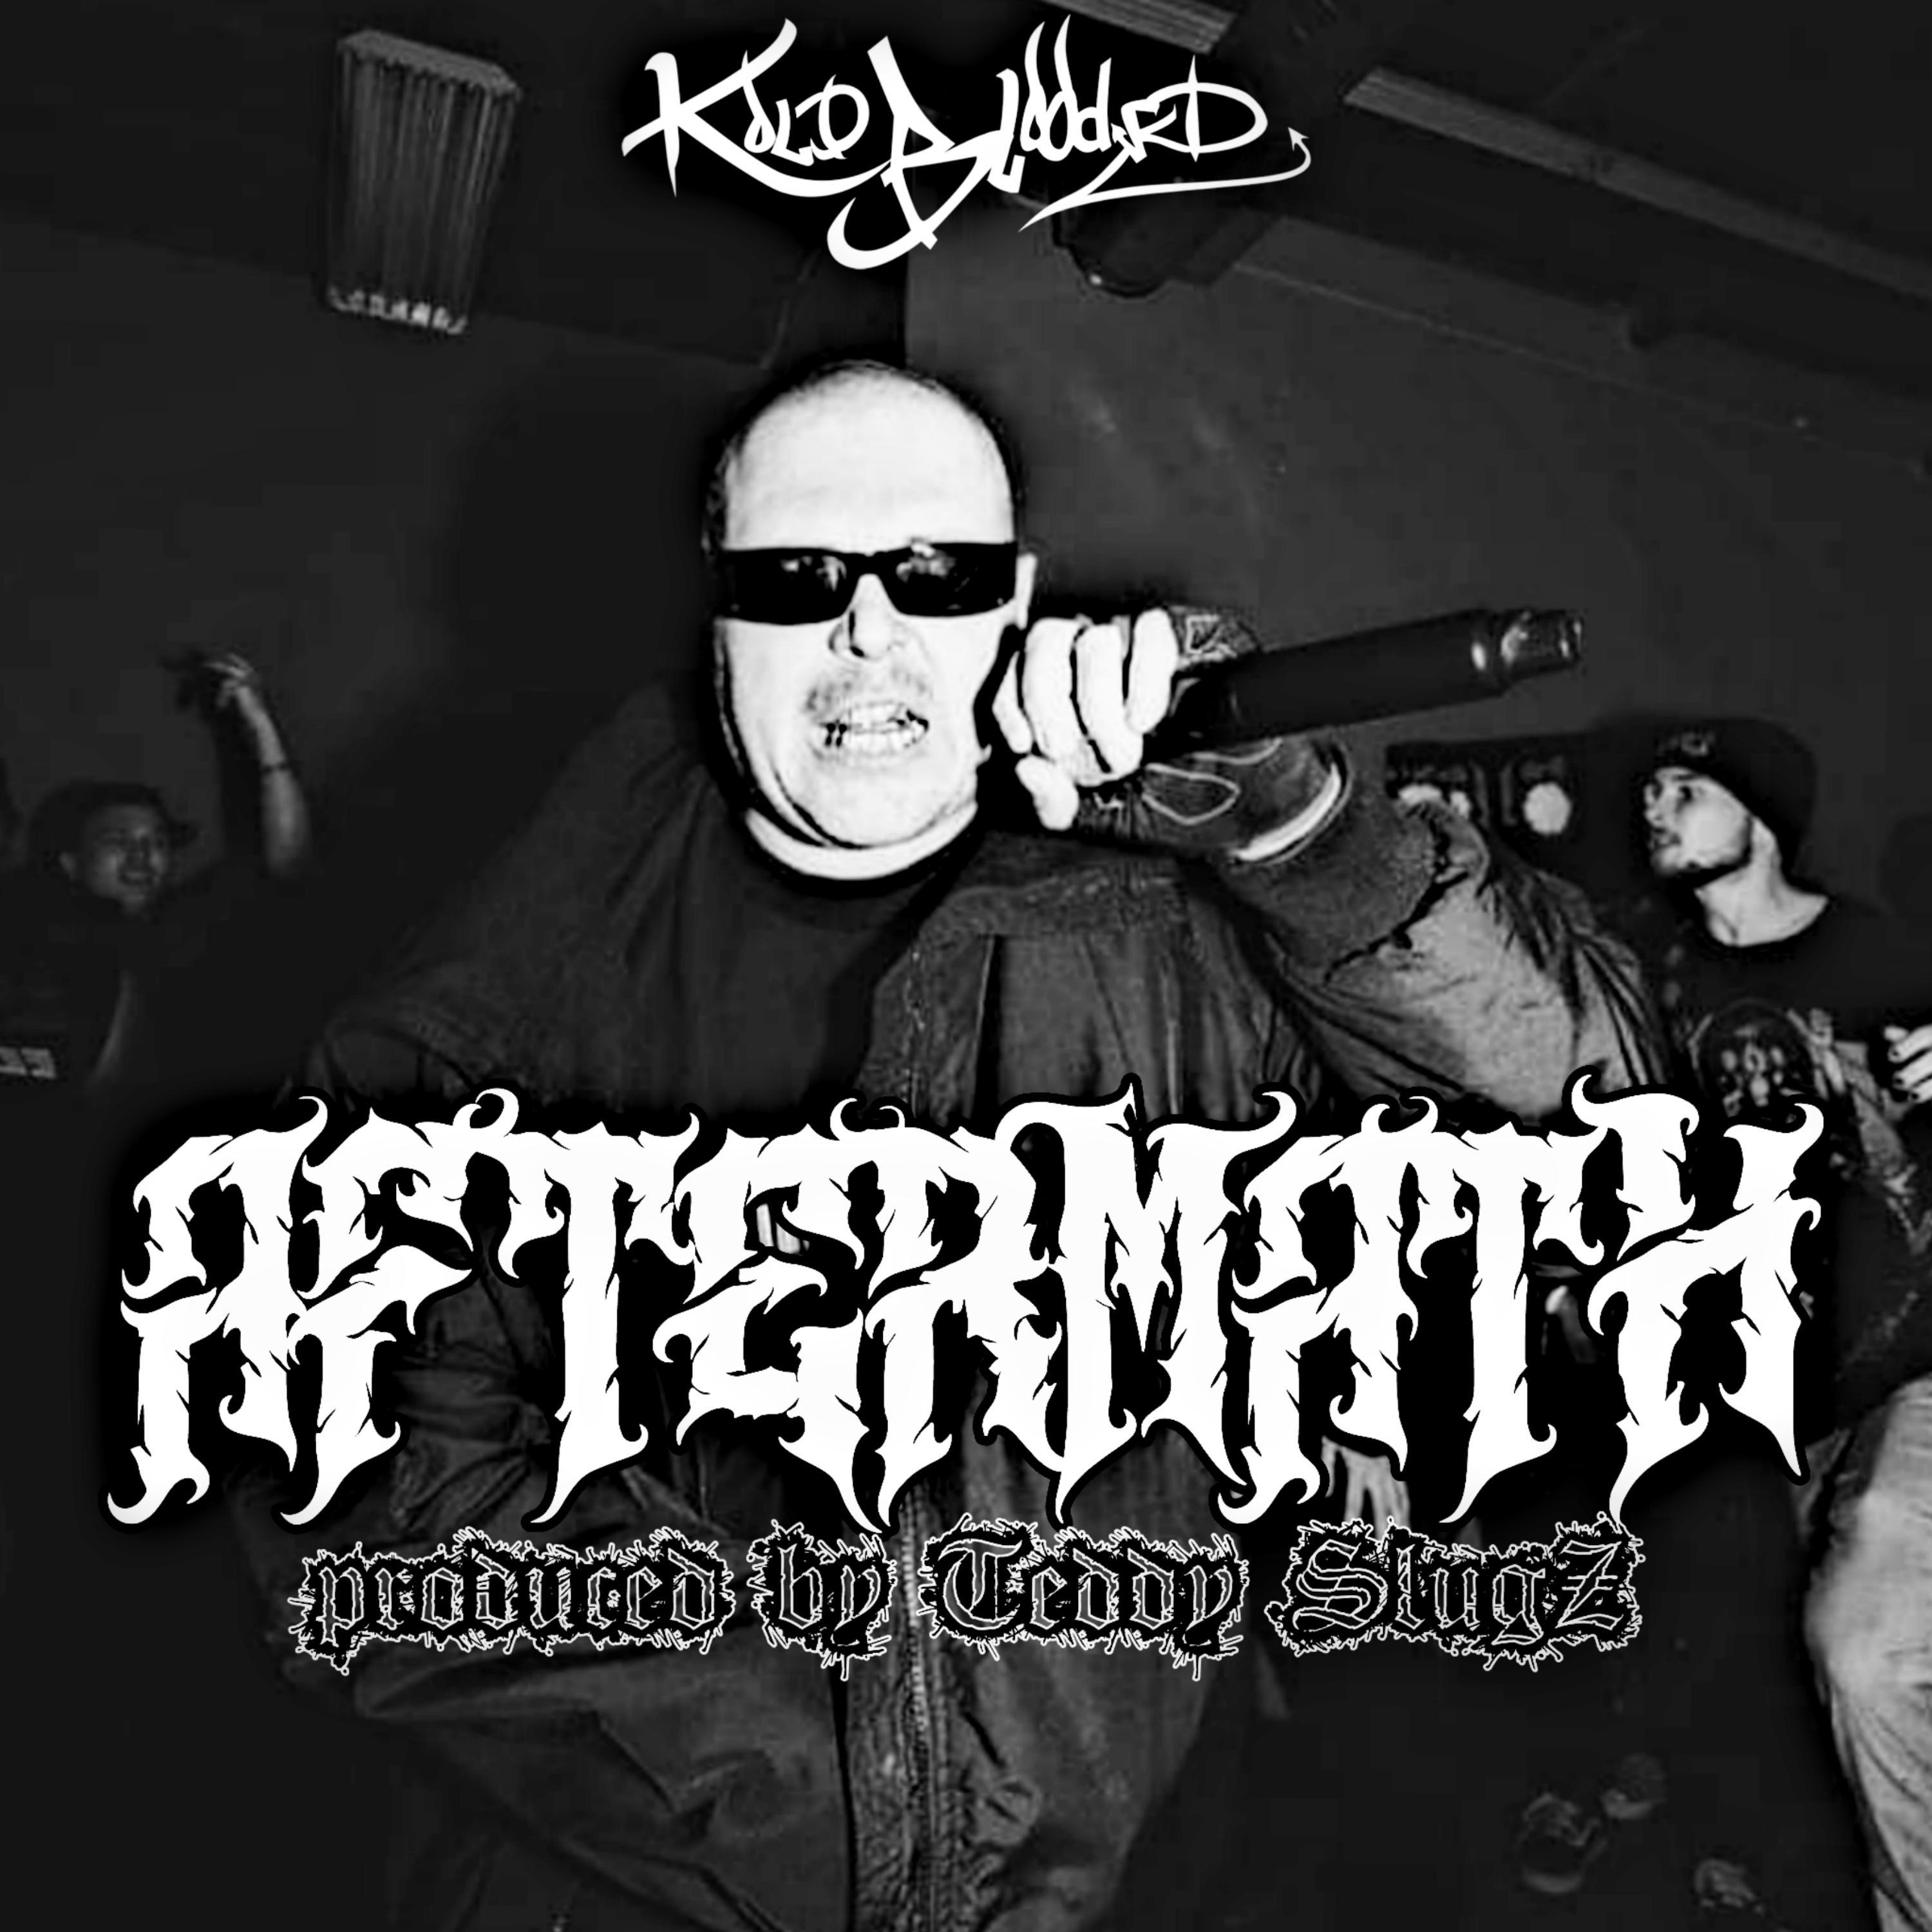 Kold-Blooded - AFTERMATH (feat. Teddy Slugz)